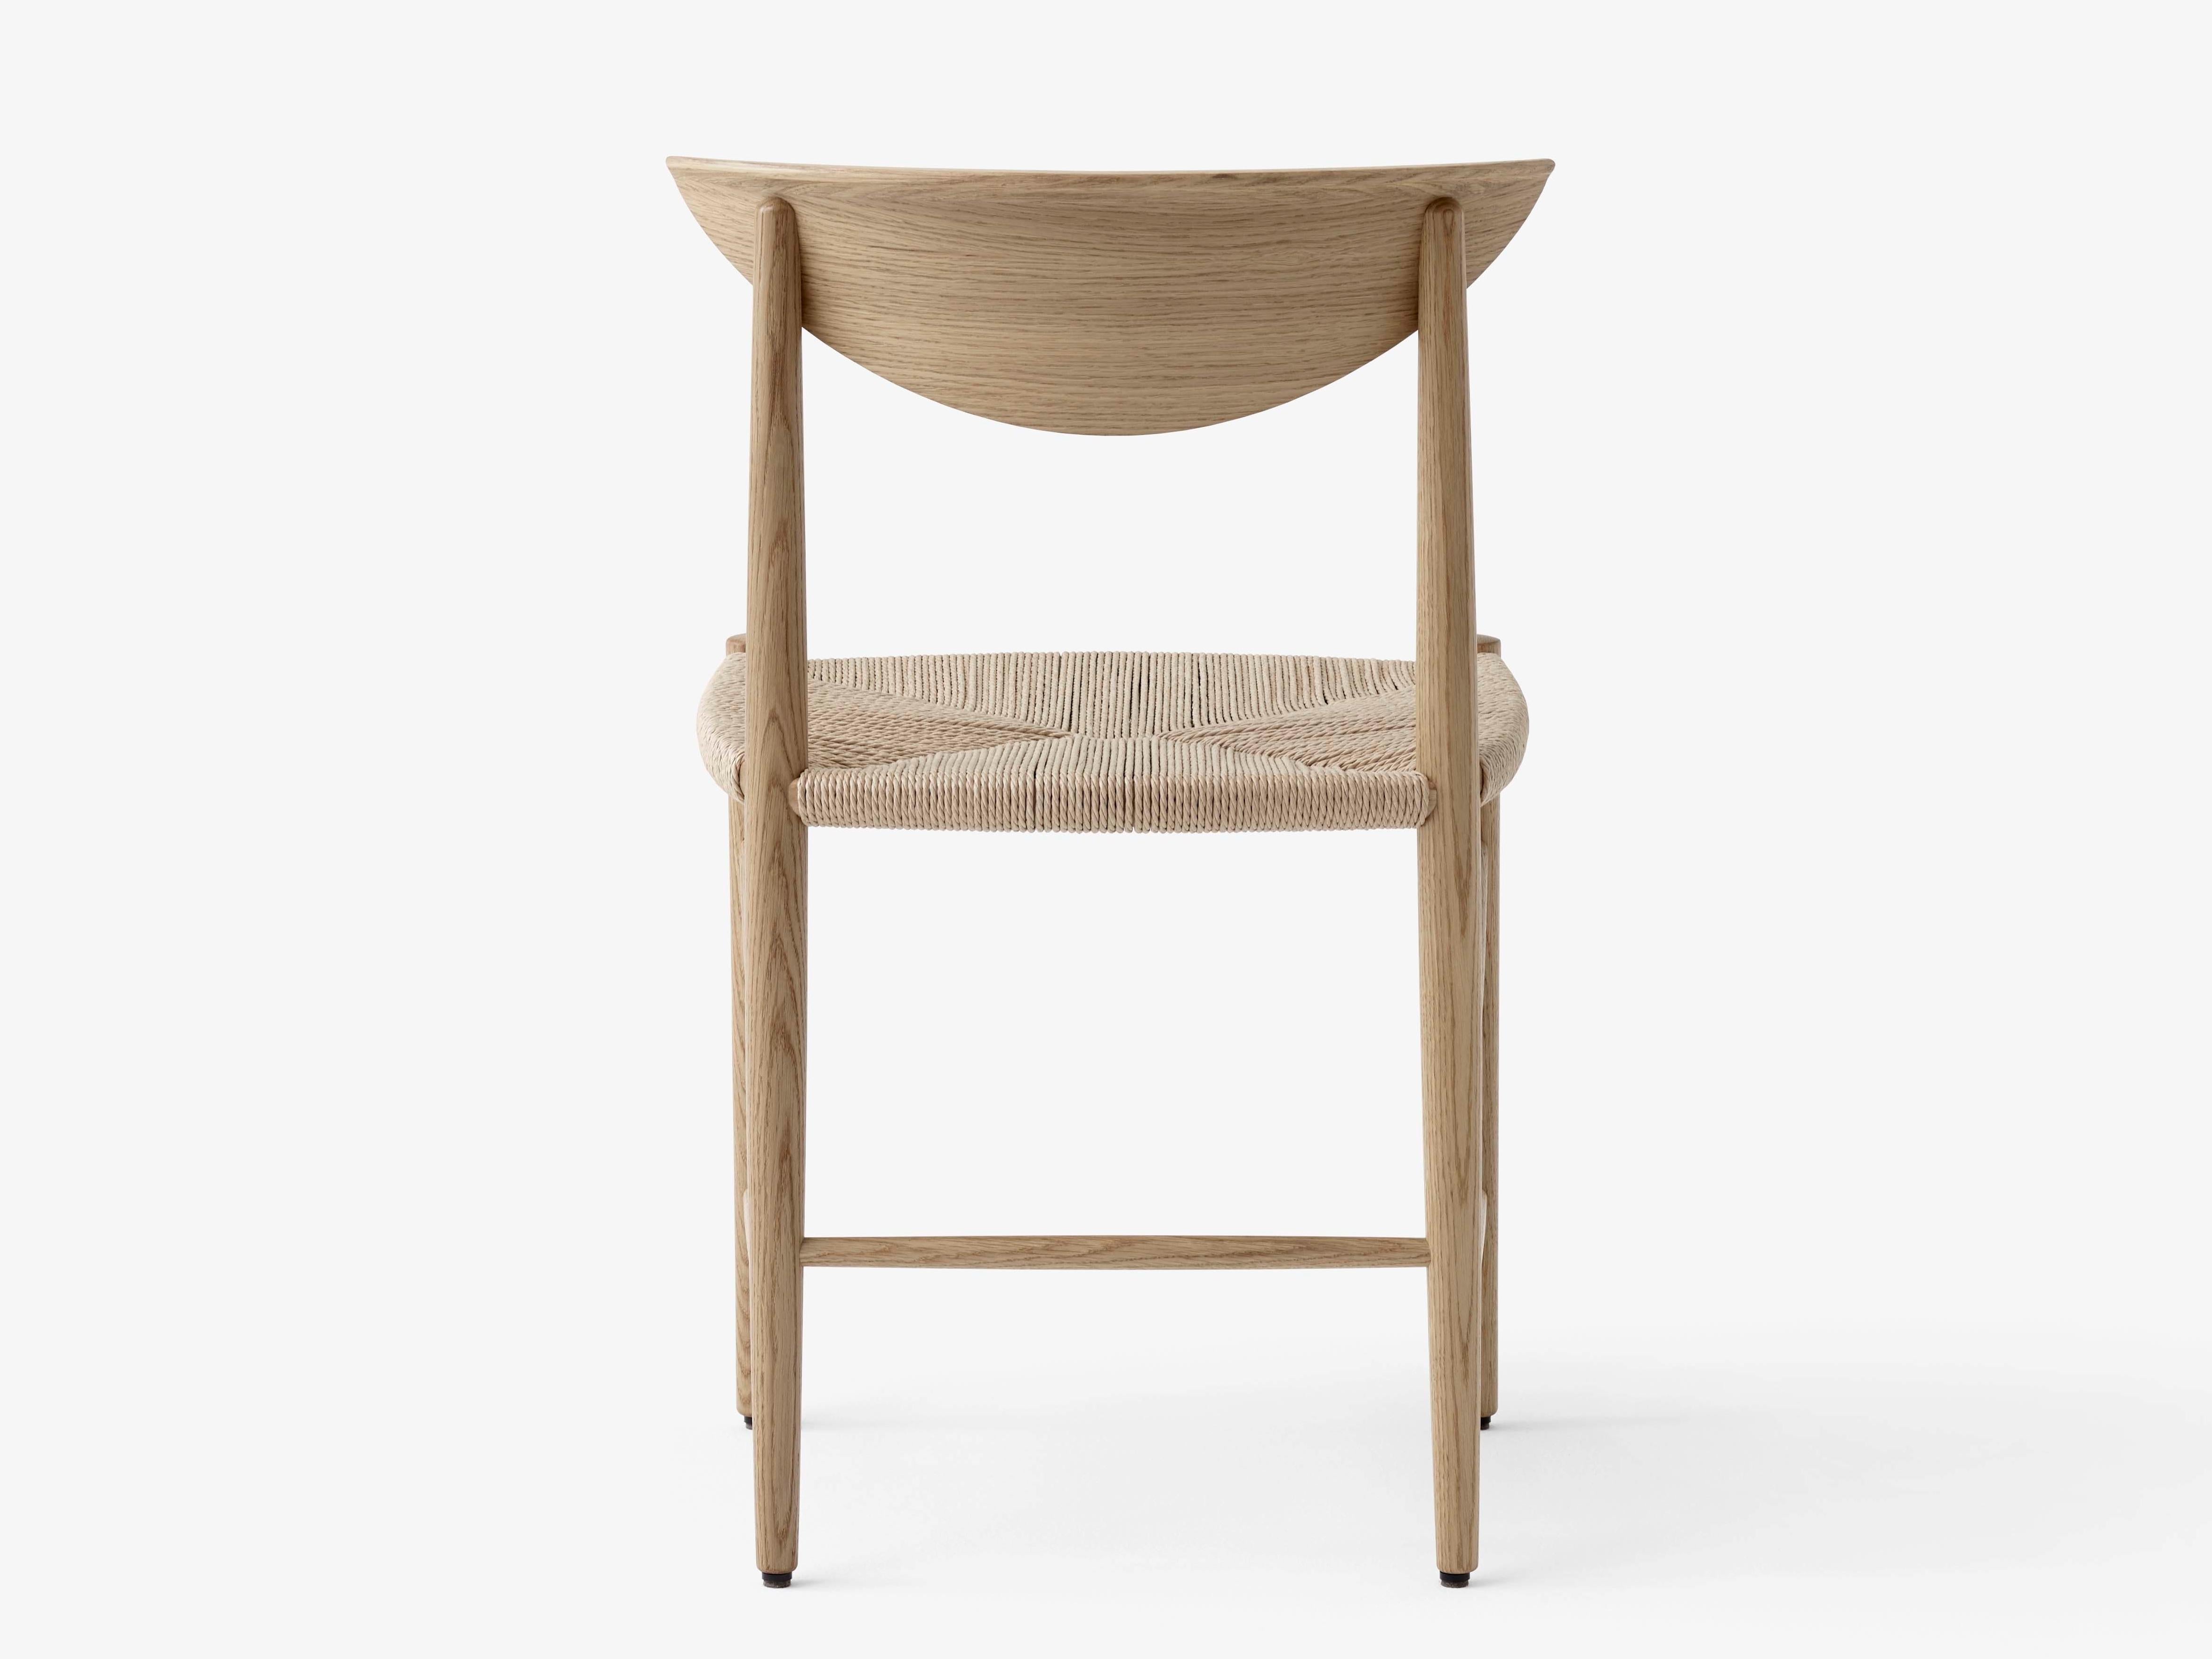 Gezeichneter Stuhl Modell 316 von Hvidt und Mølgaard. Neue Ausgabe. Der Stuhl Modell 316 von Hvidt & Mølgaard ist ein maßgeblicher Vertreter des dänischen Designs. Durch den Einsatz traditioneller Handwerkstechniken und die Verwendung organischer